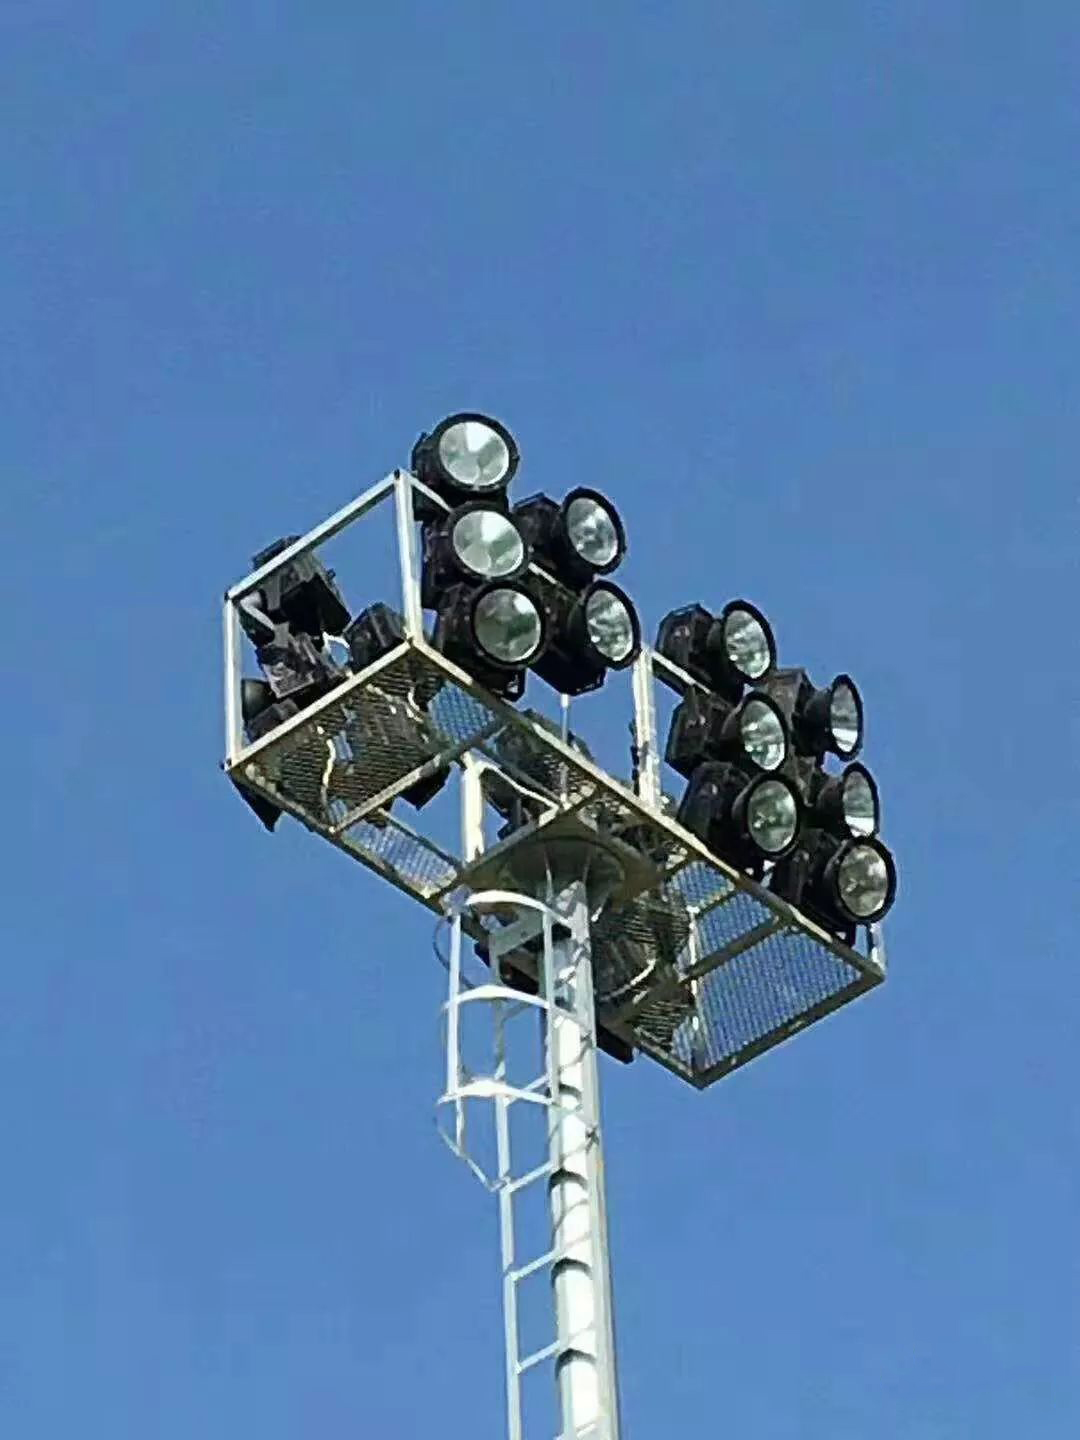 非电视转播业余足球场和电视转播专业足球场照明标准要求和灯具安装方式